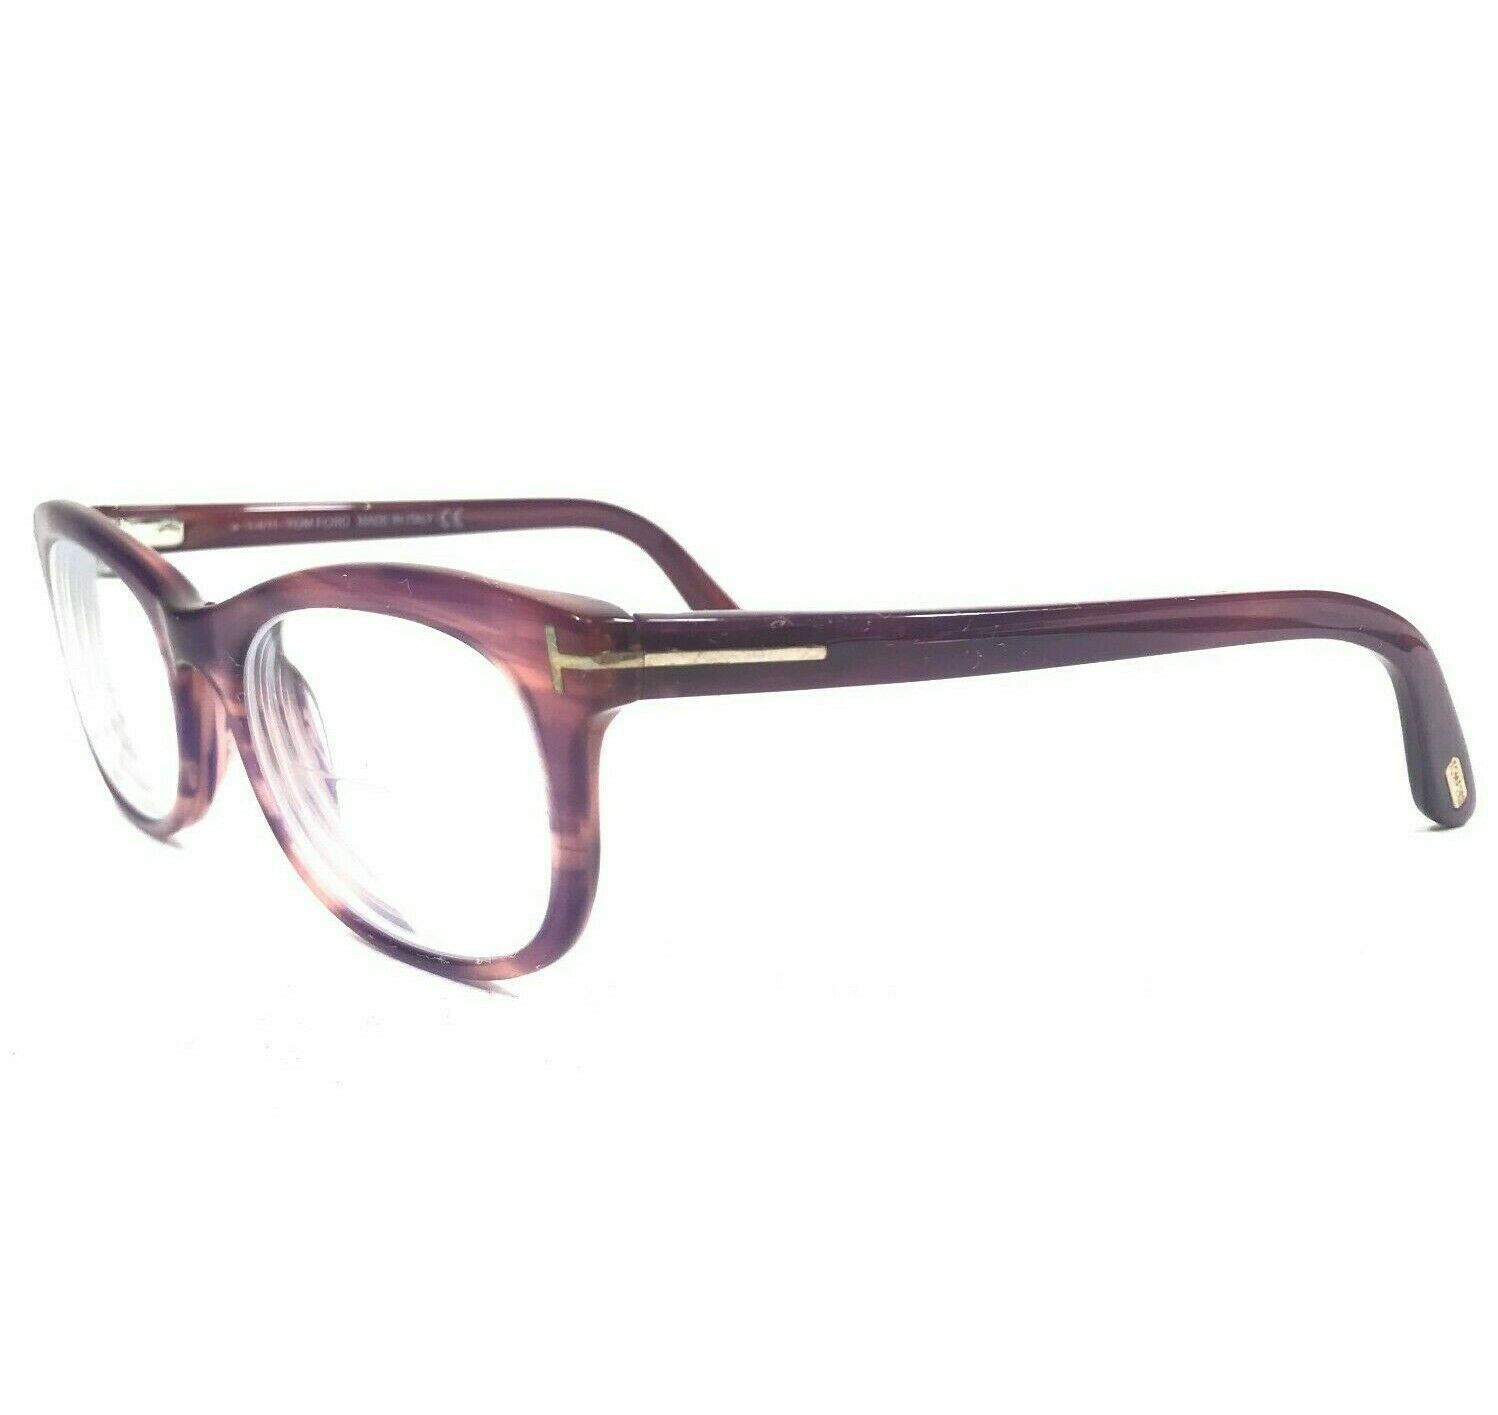 Primary image for Tom Ford TF5232 083 Sunglasses Eyeglasses Frames Cat Eye Full Rim Purple Horn